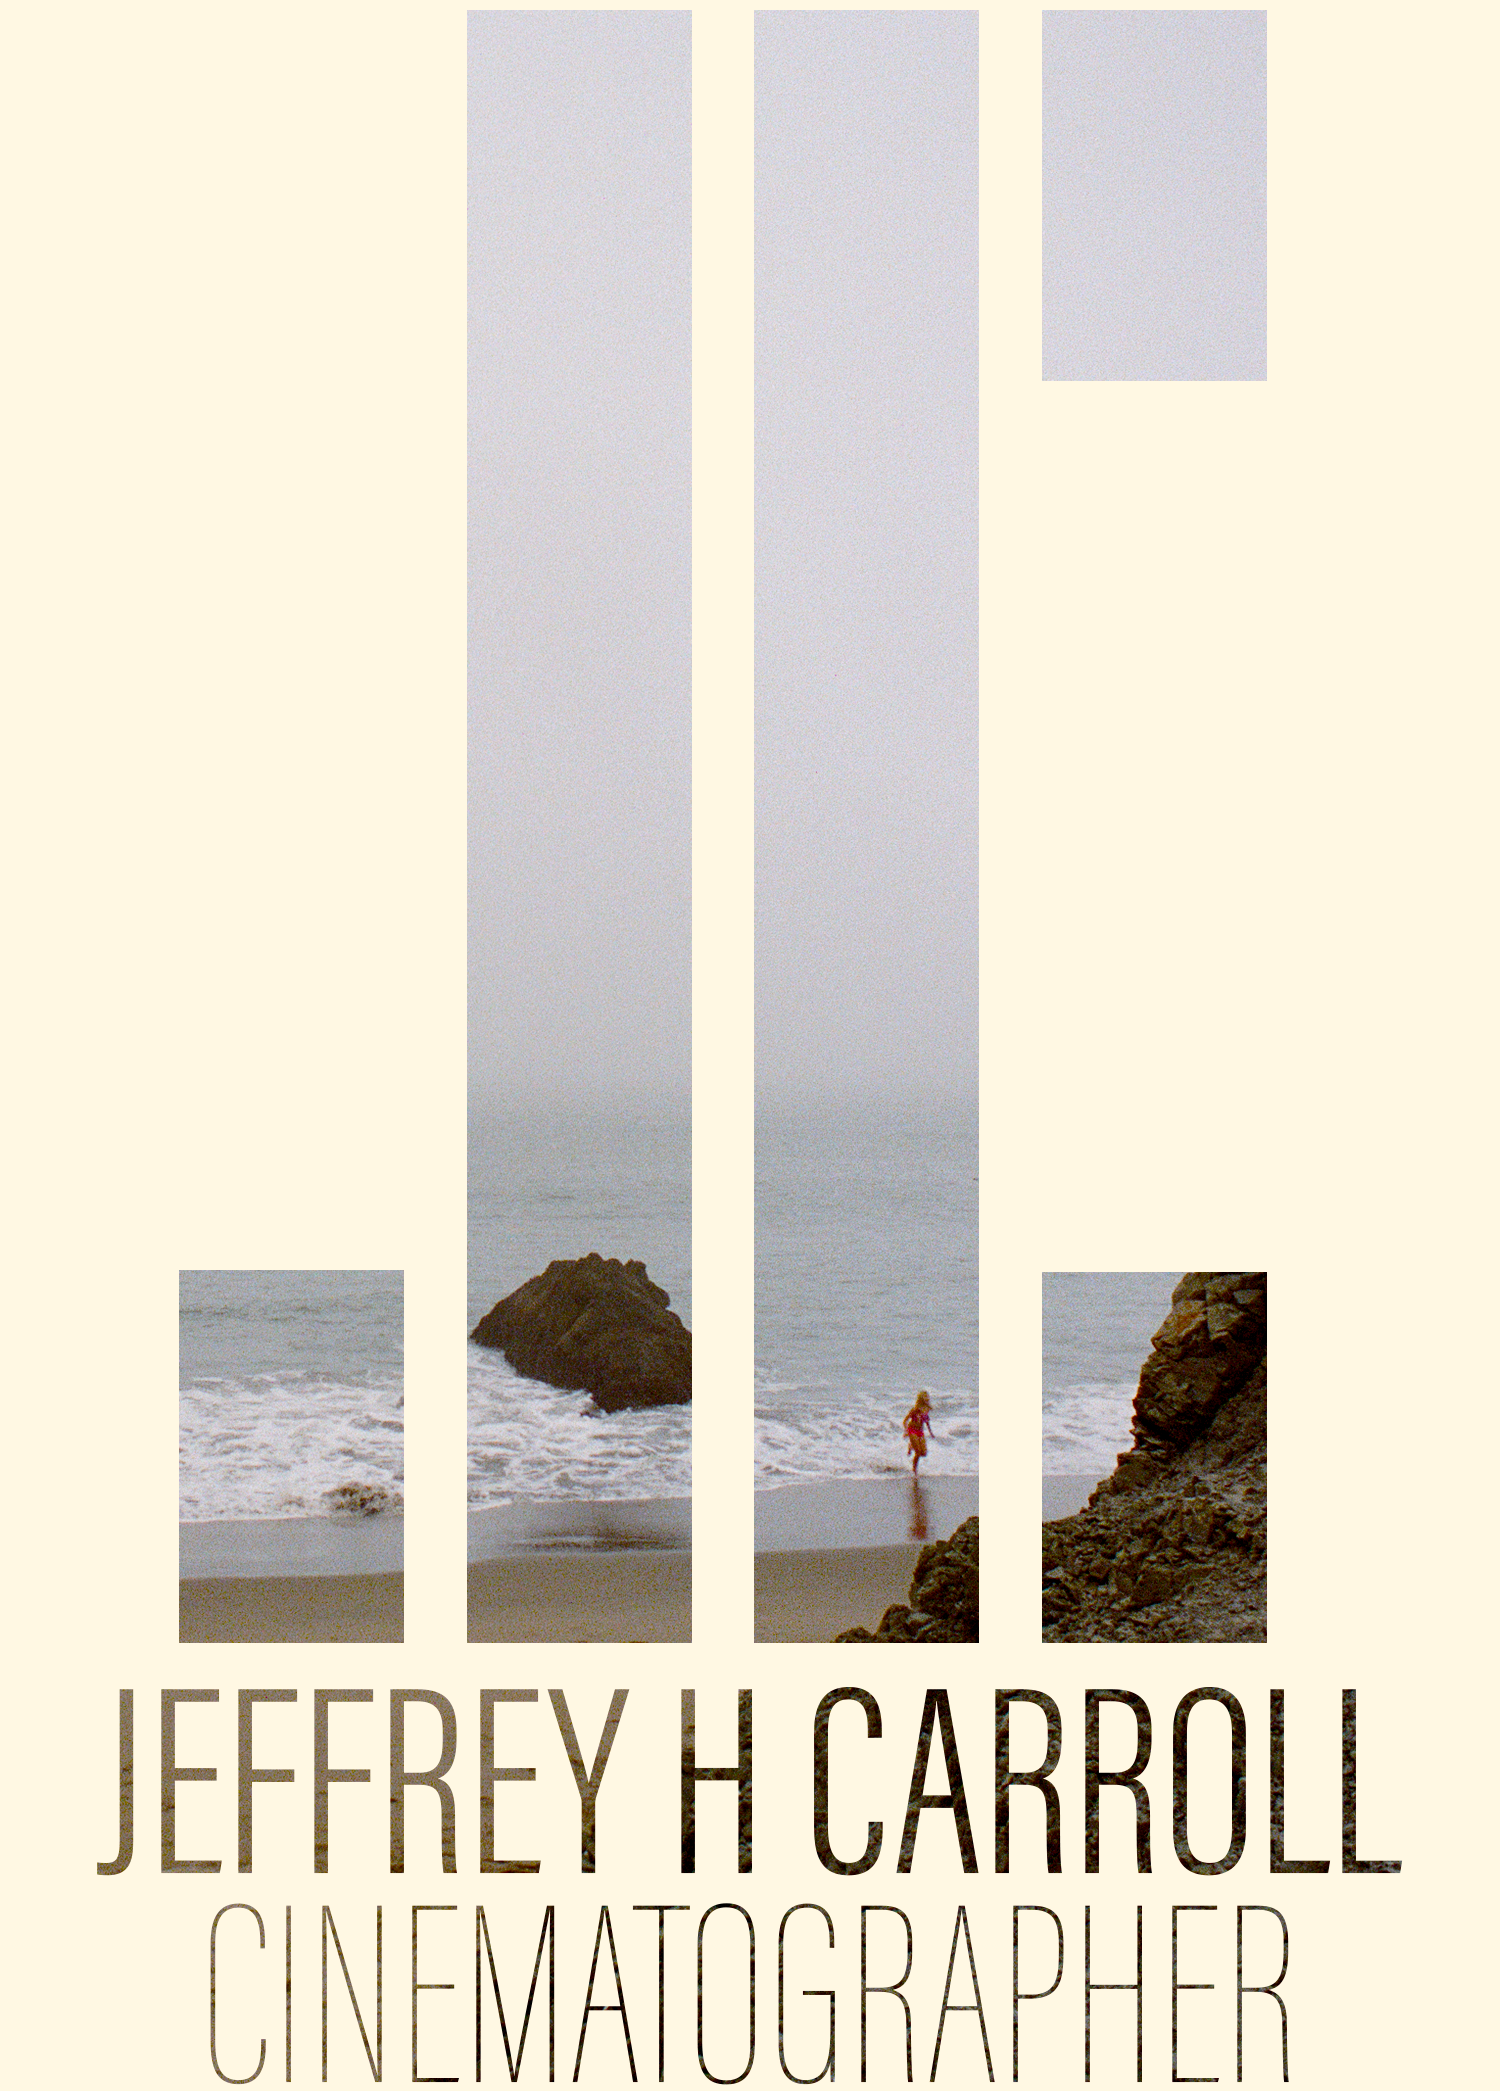 Jeffrey Carroll